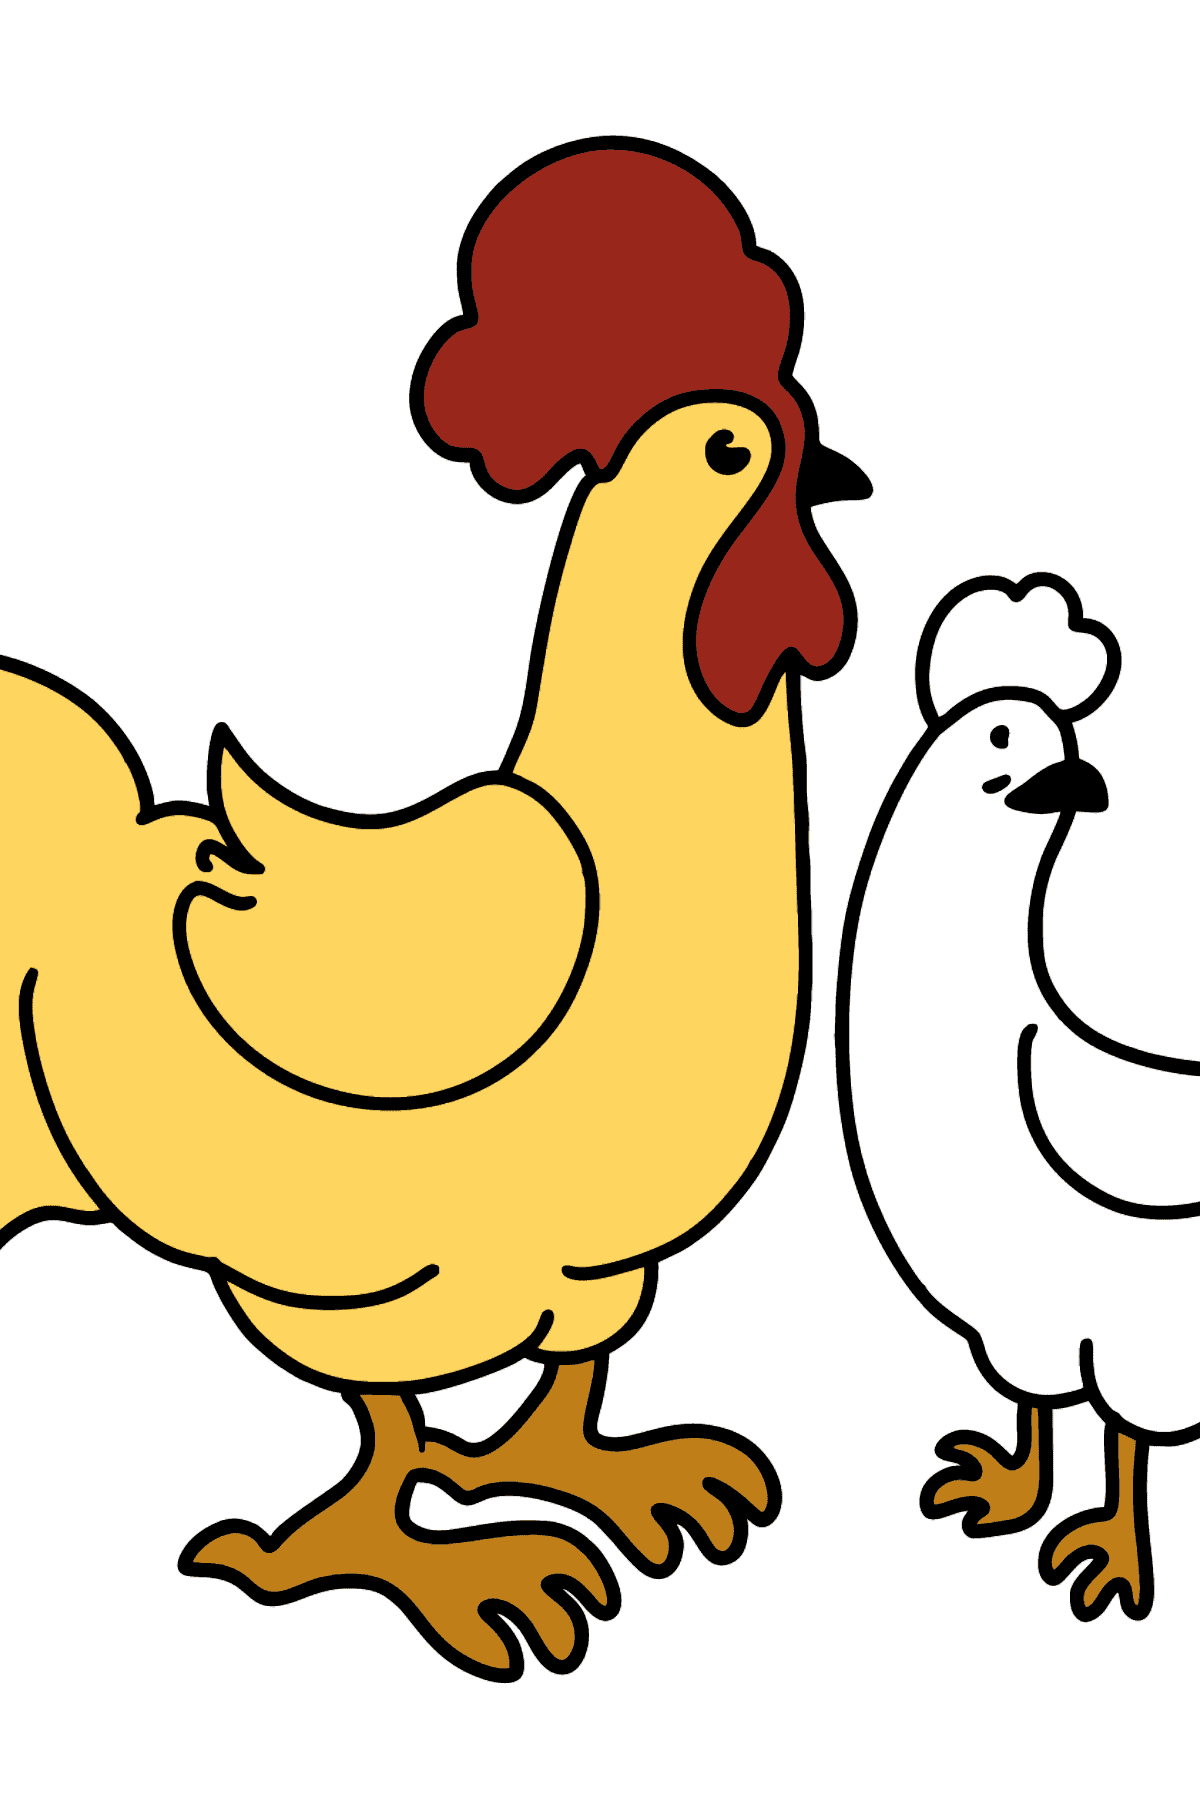 Dibujo de Gallo y gallina para colorear - Dibujos para Colorear para Niños